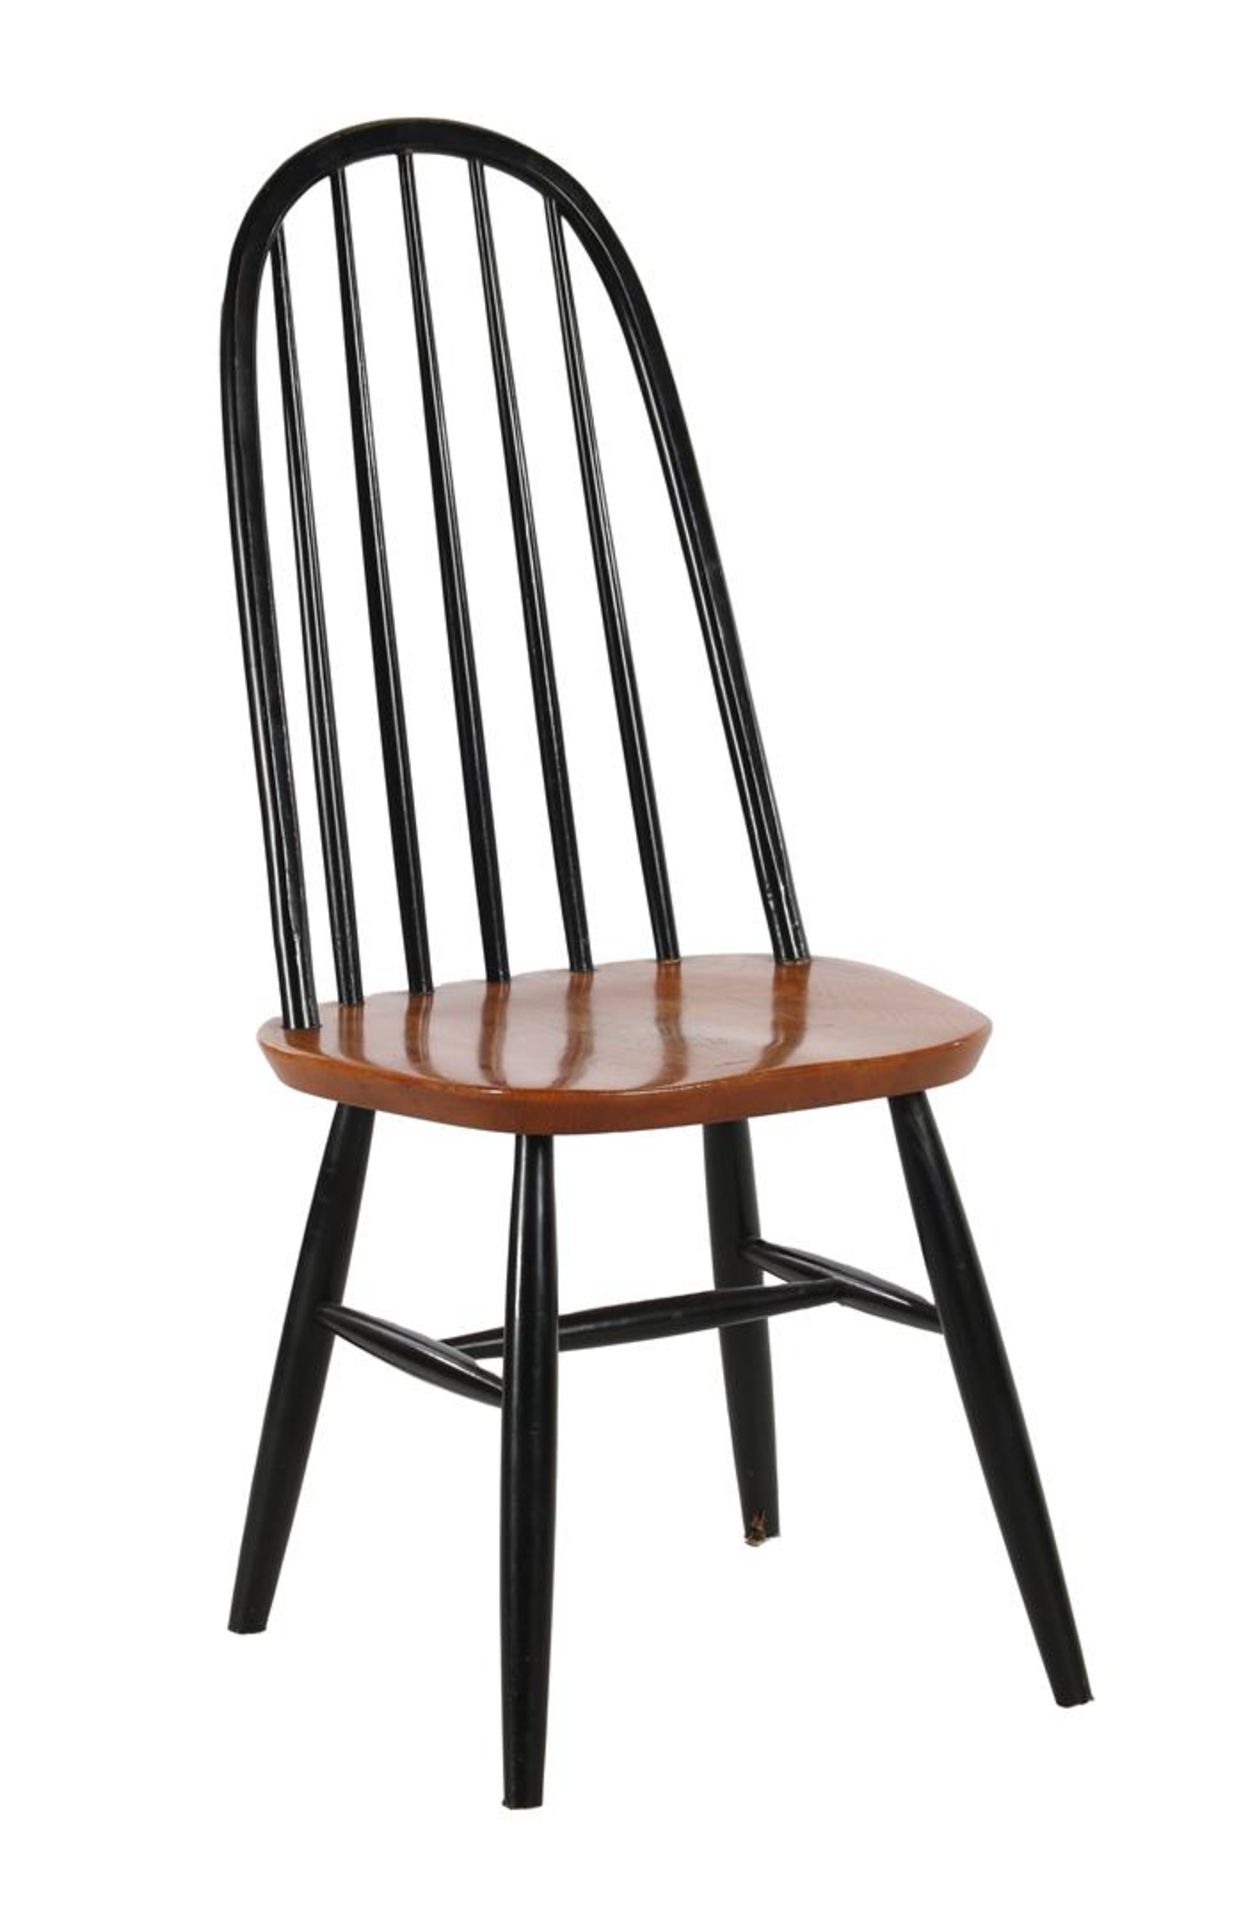 Bar chair